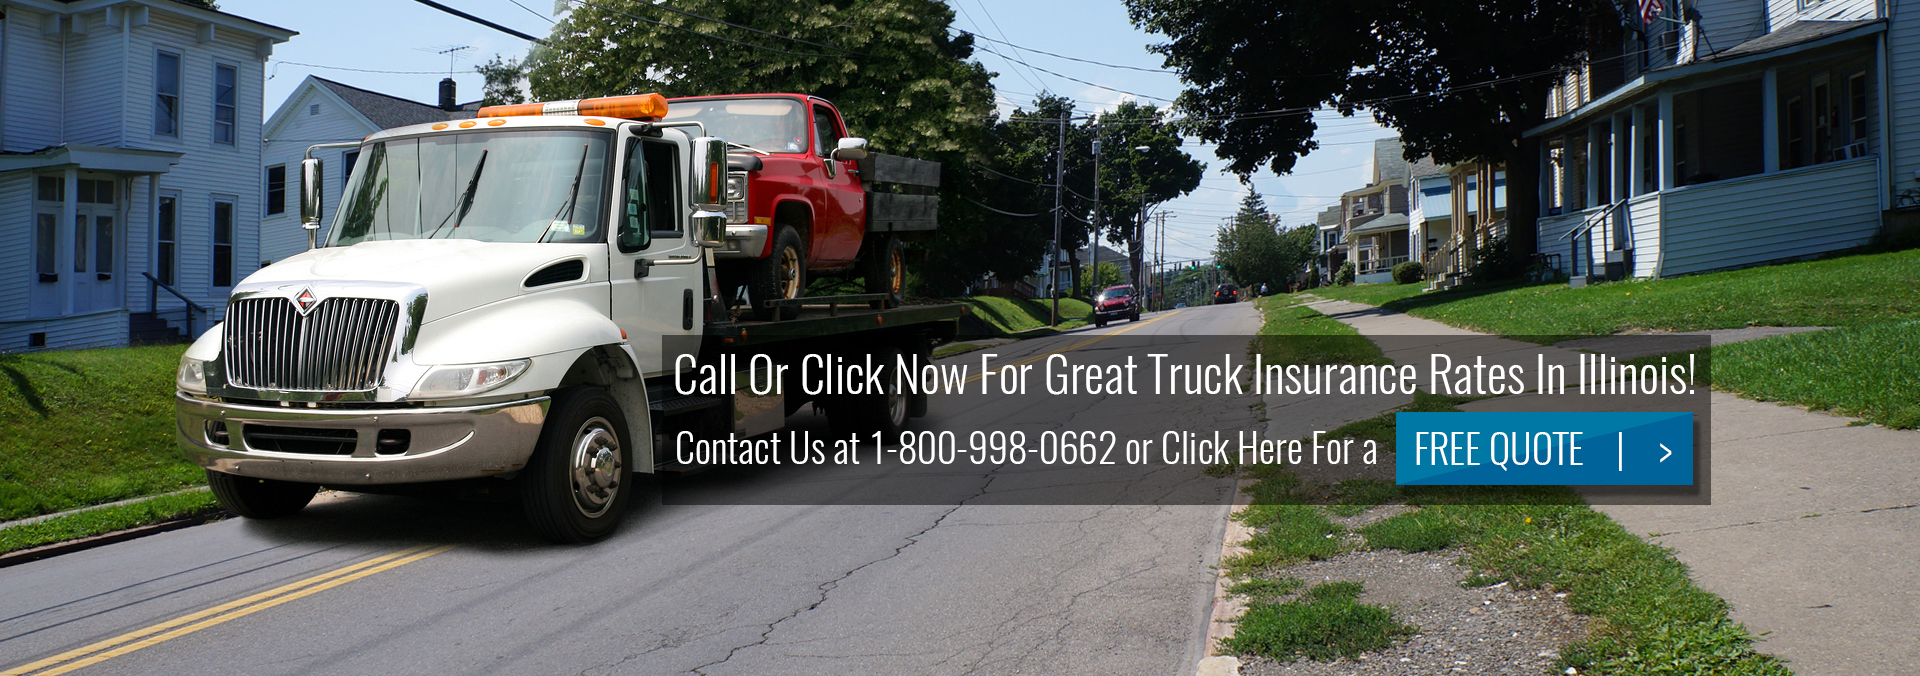 Pathway Truck Insurance Illinois Slider Tow